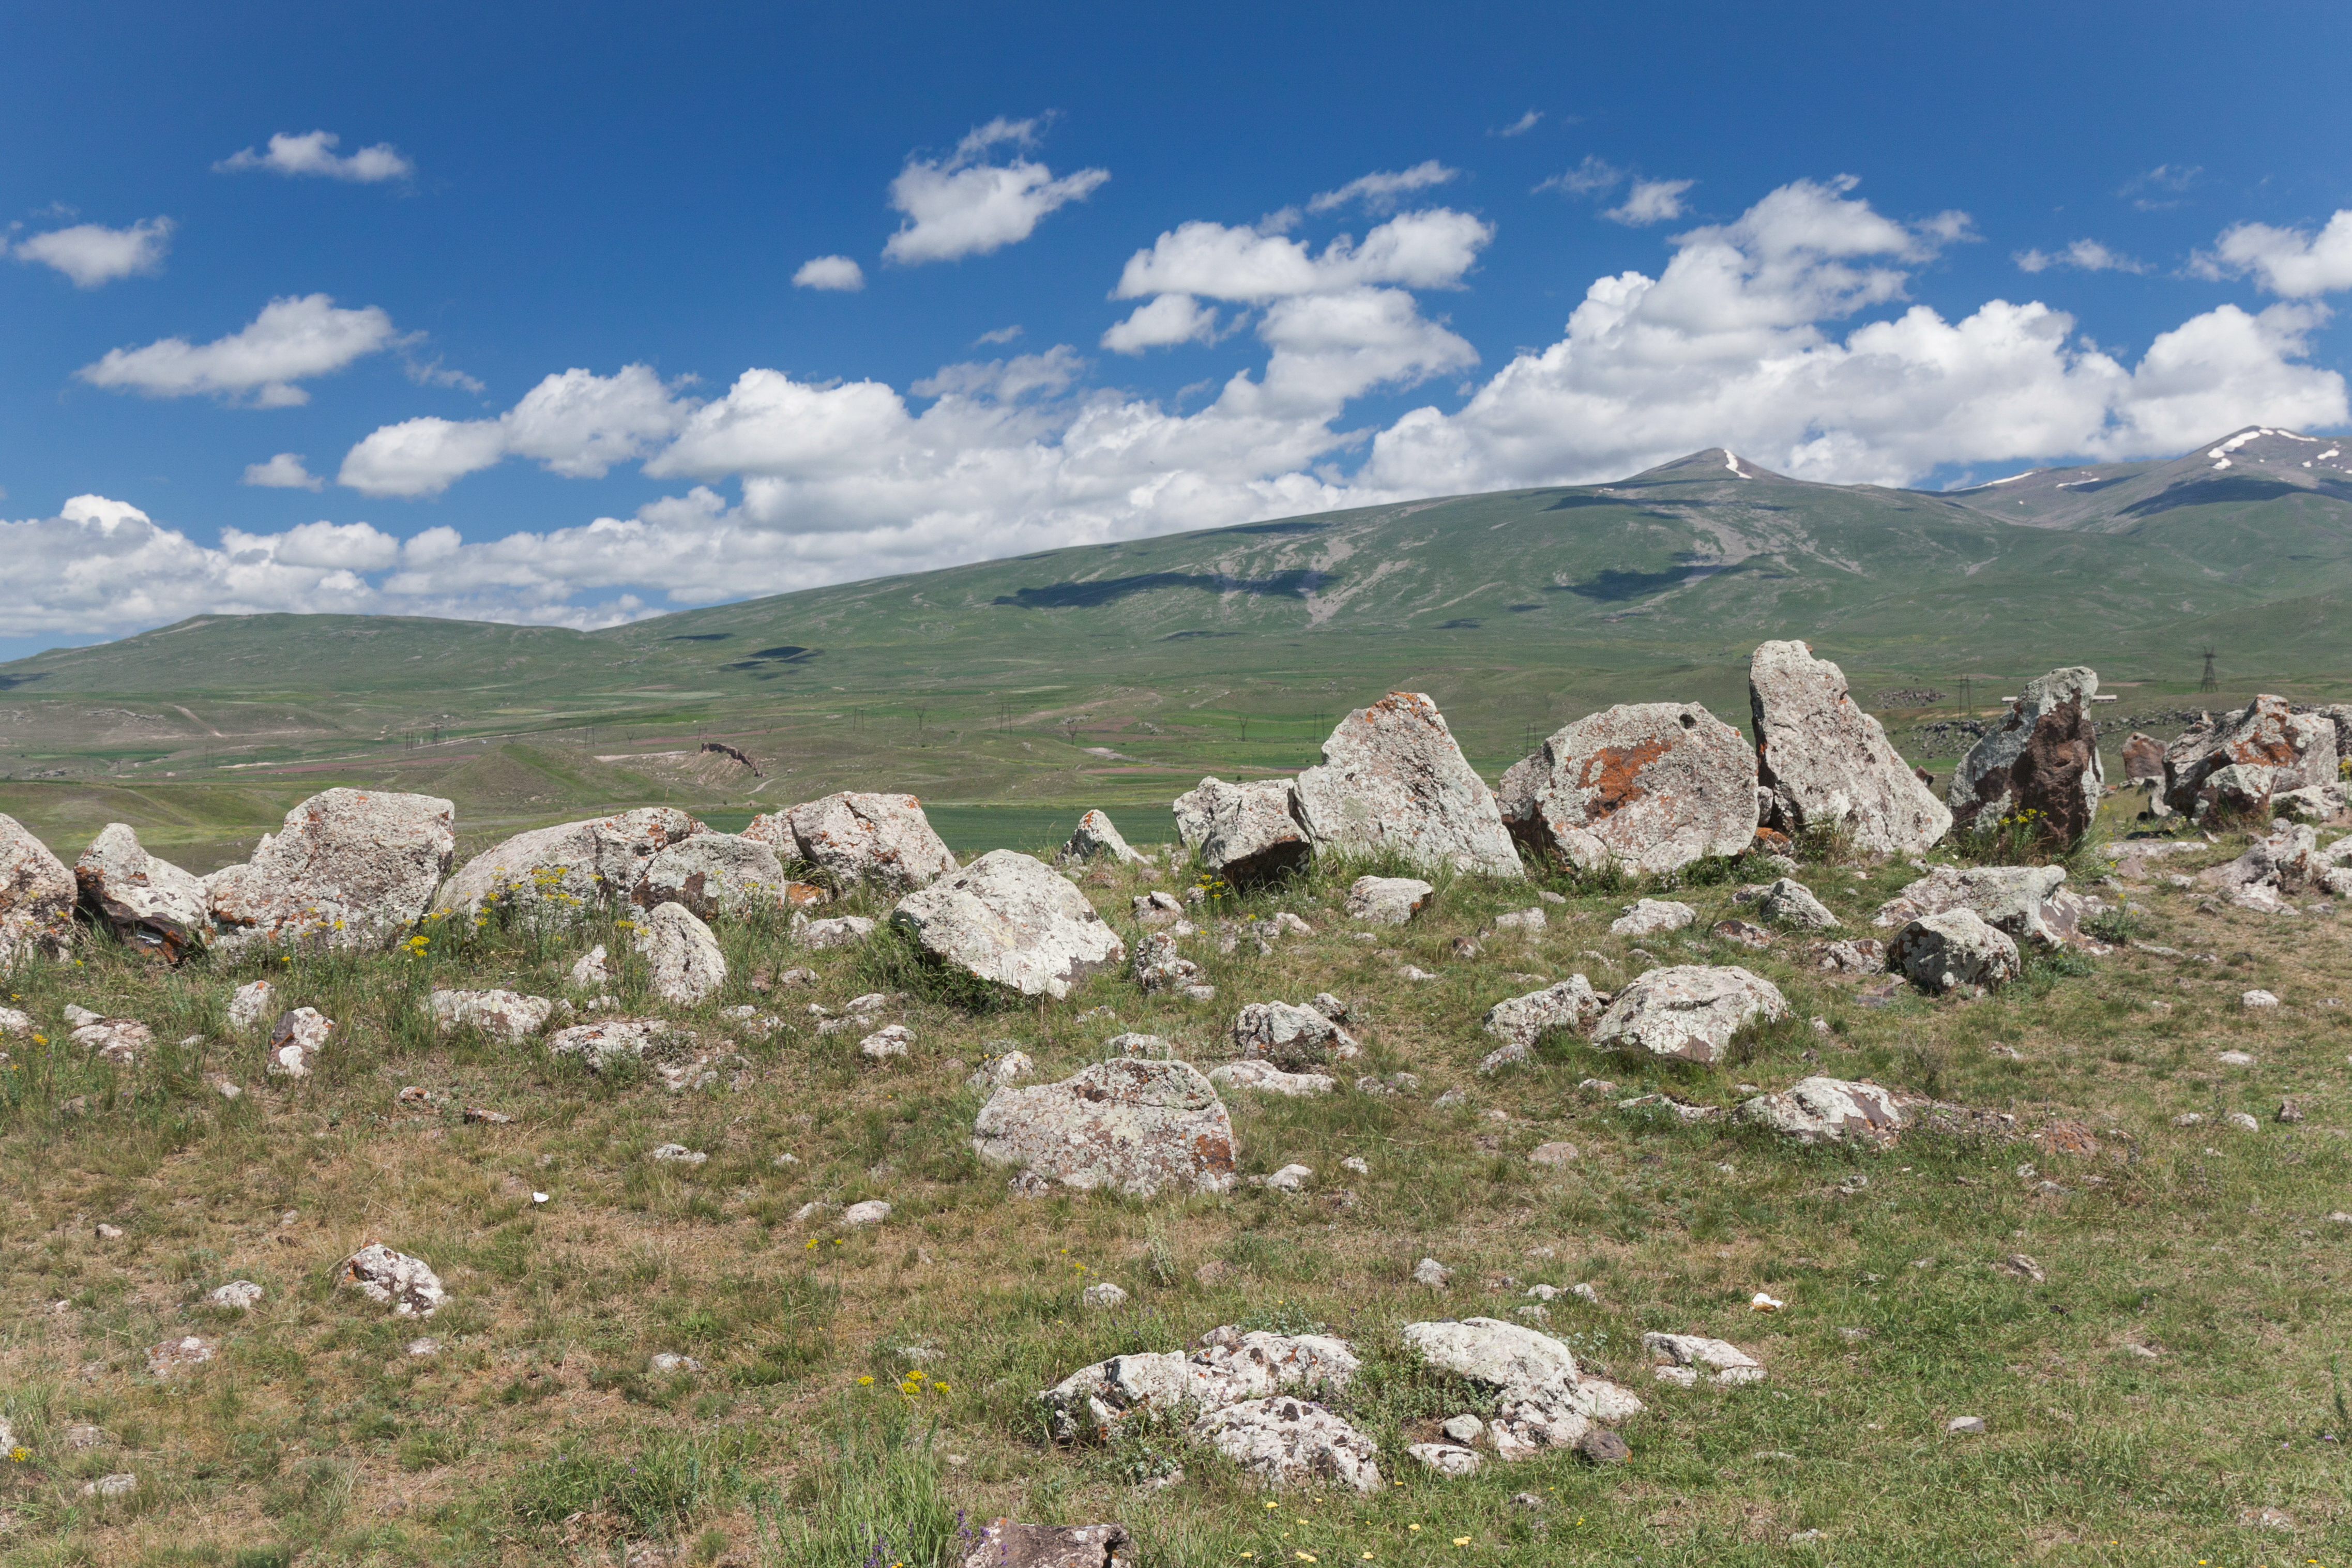 2014 Prowincja Sjunik, Zorac Karer, Prehistoryczny kompleks megalityczny (005)